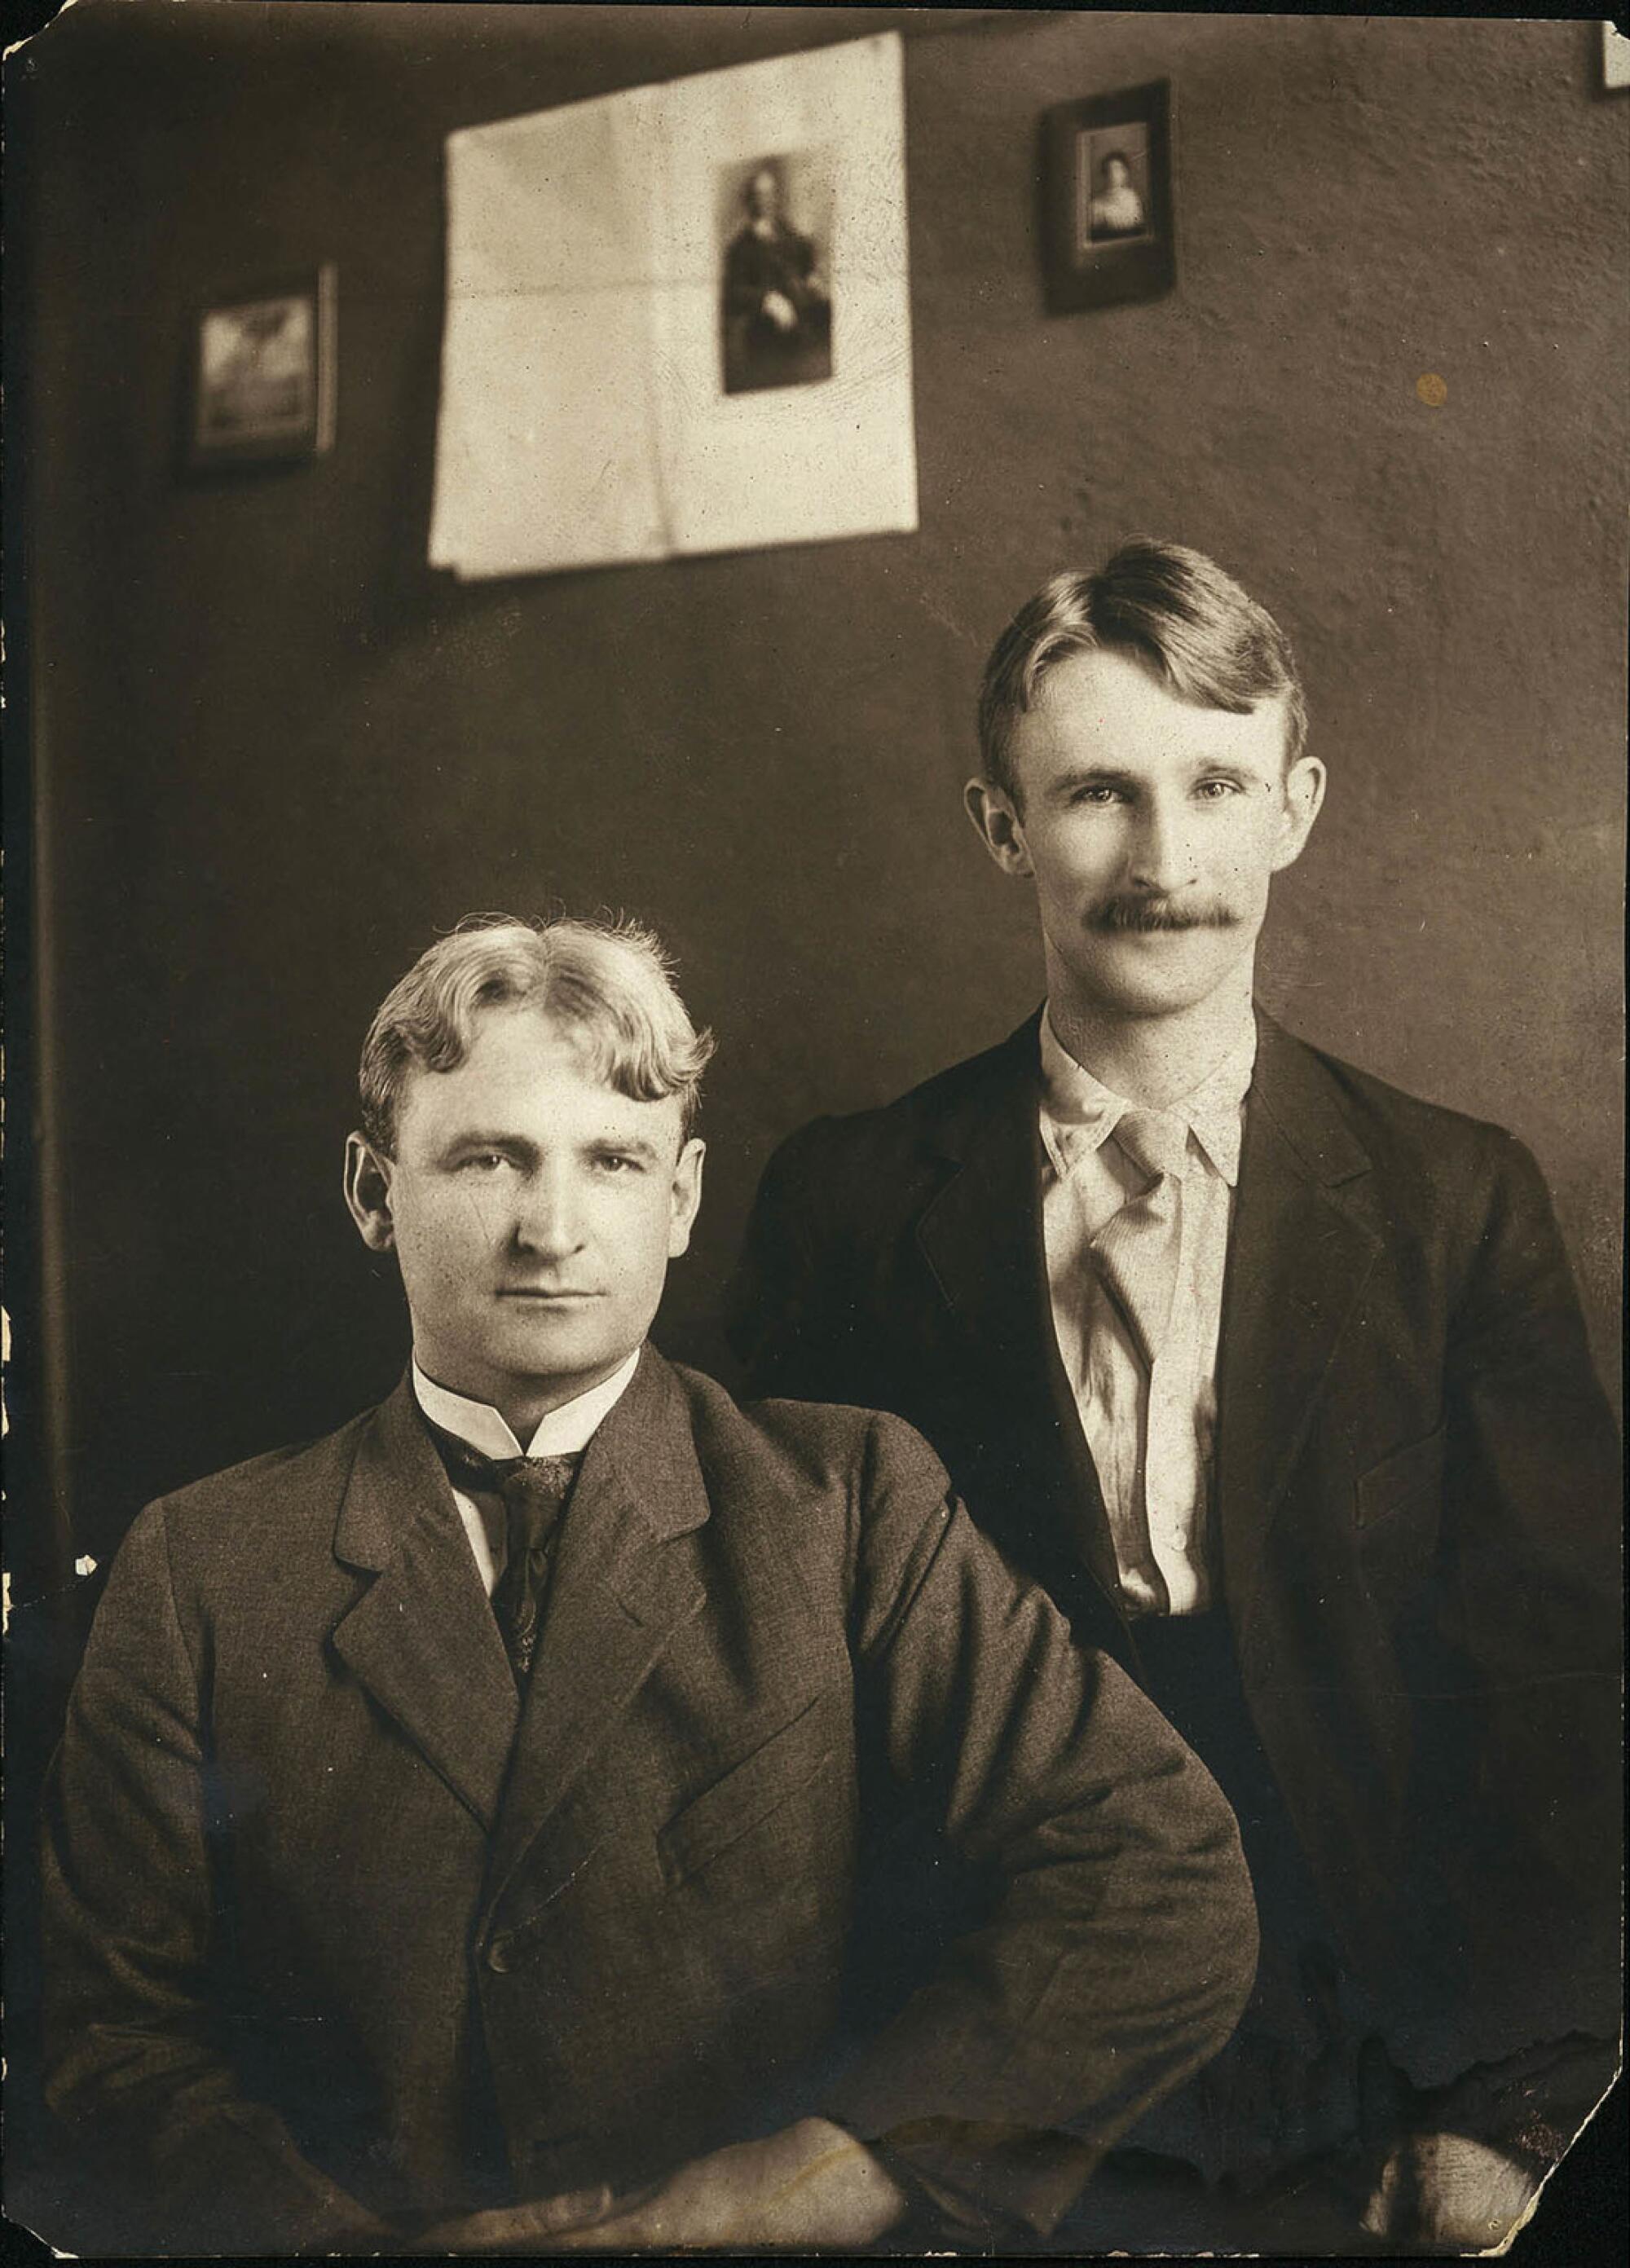 A black-and-white photo of John J. McNamara, seated, and James B. McNamara standing on one side behind him.